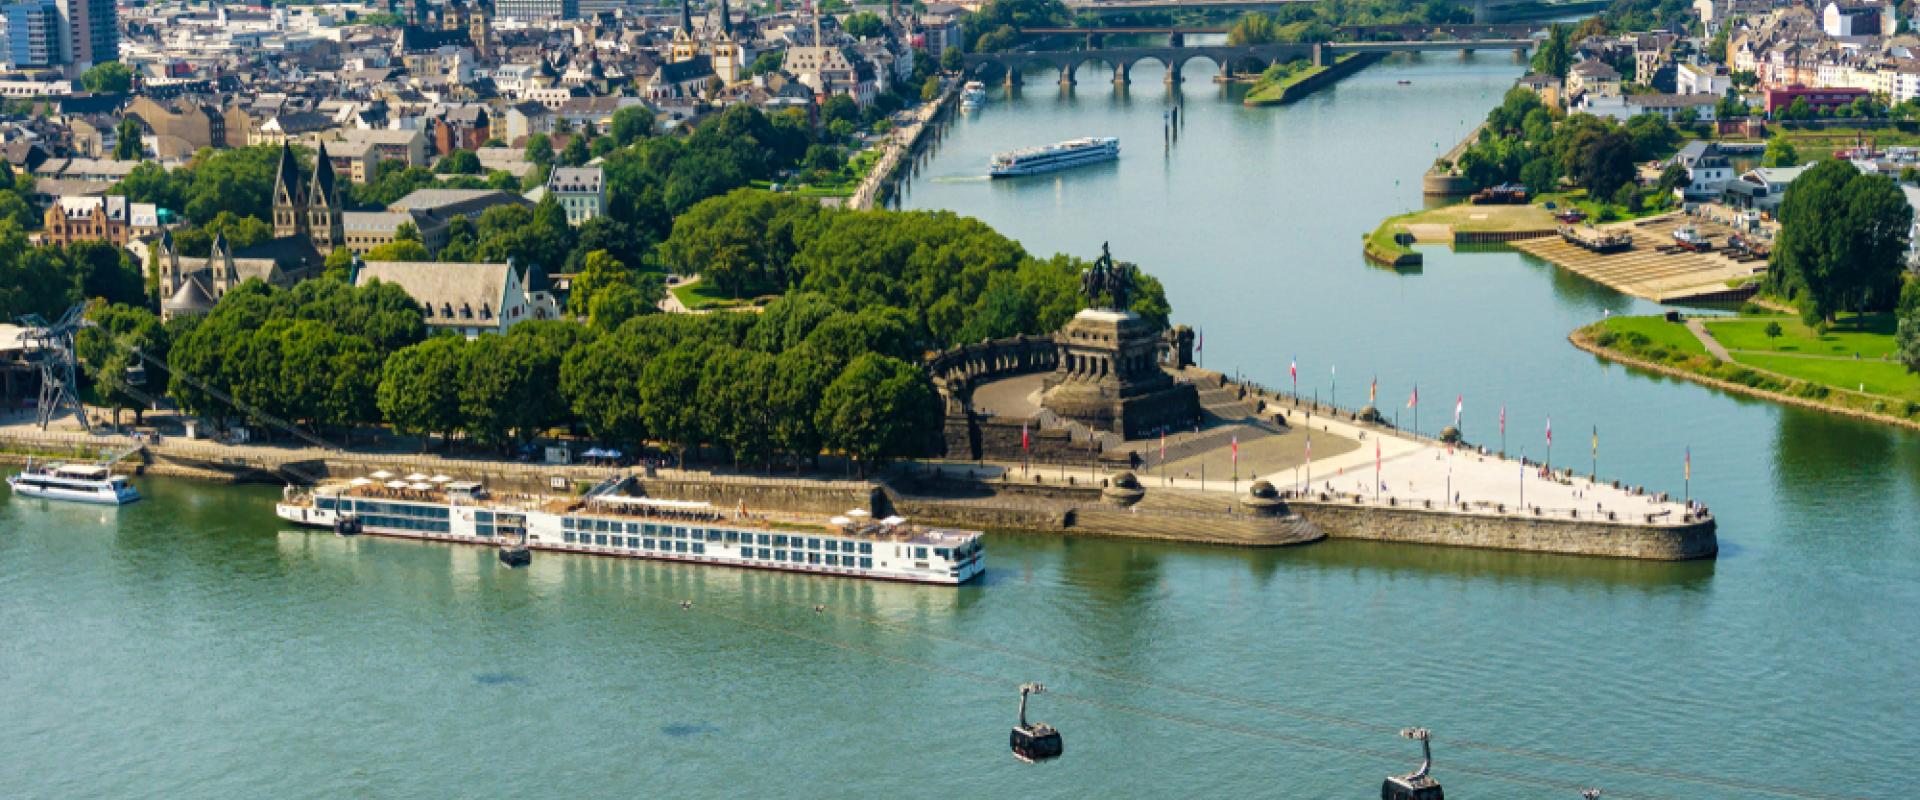 Koblenz 